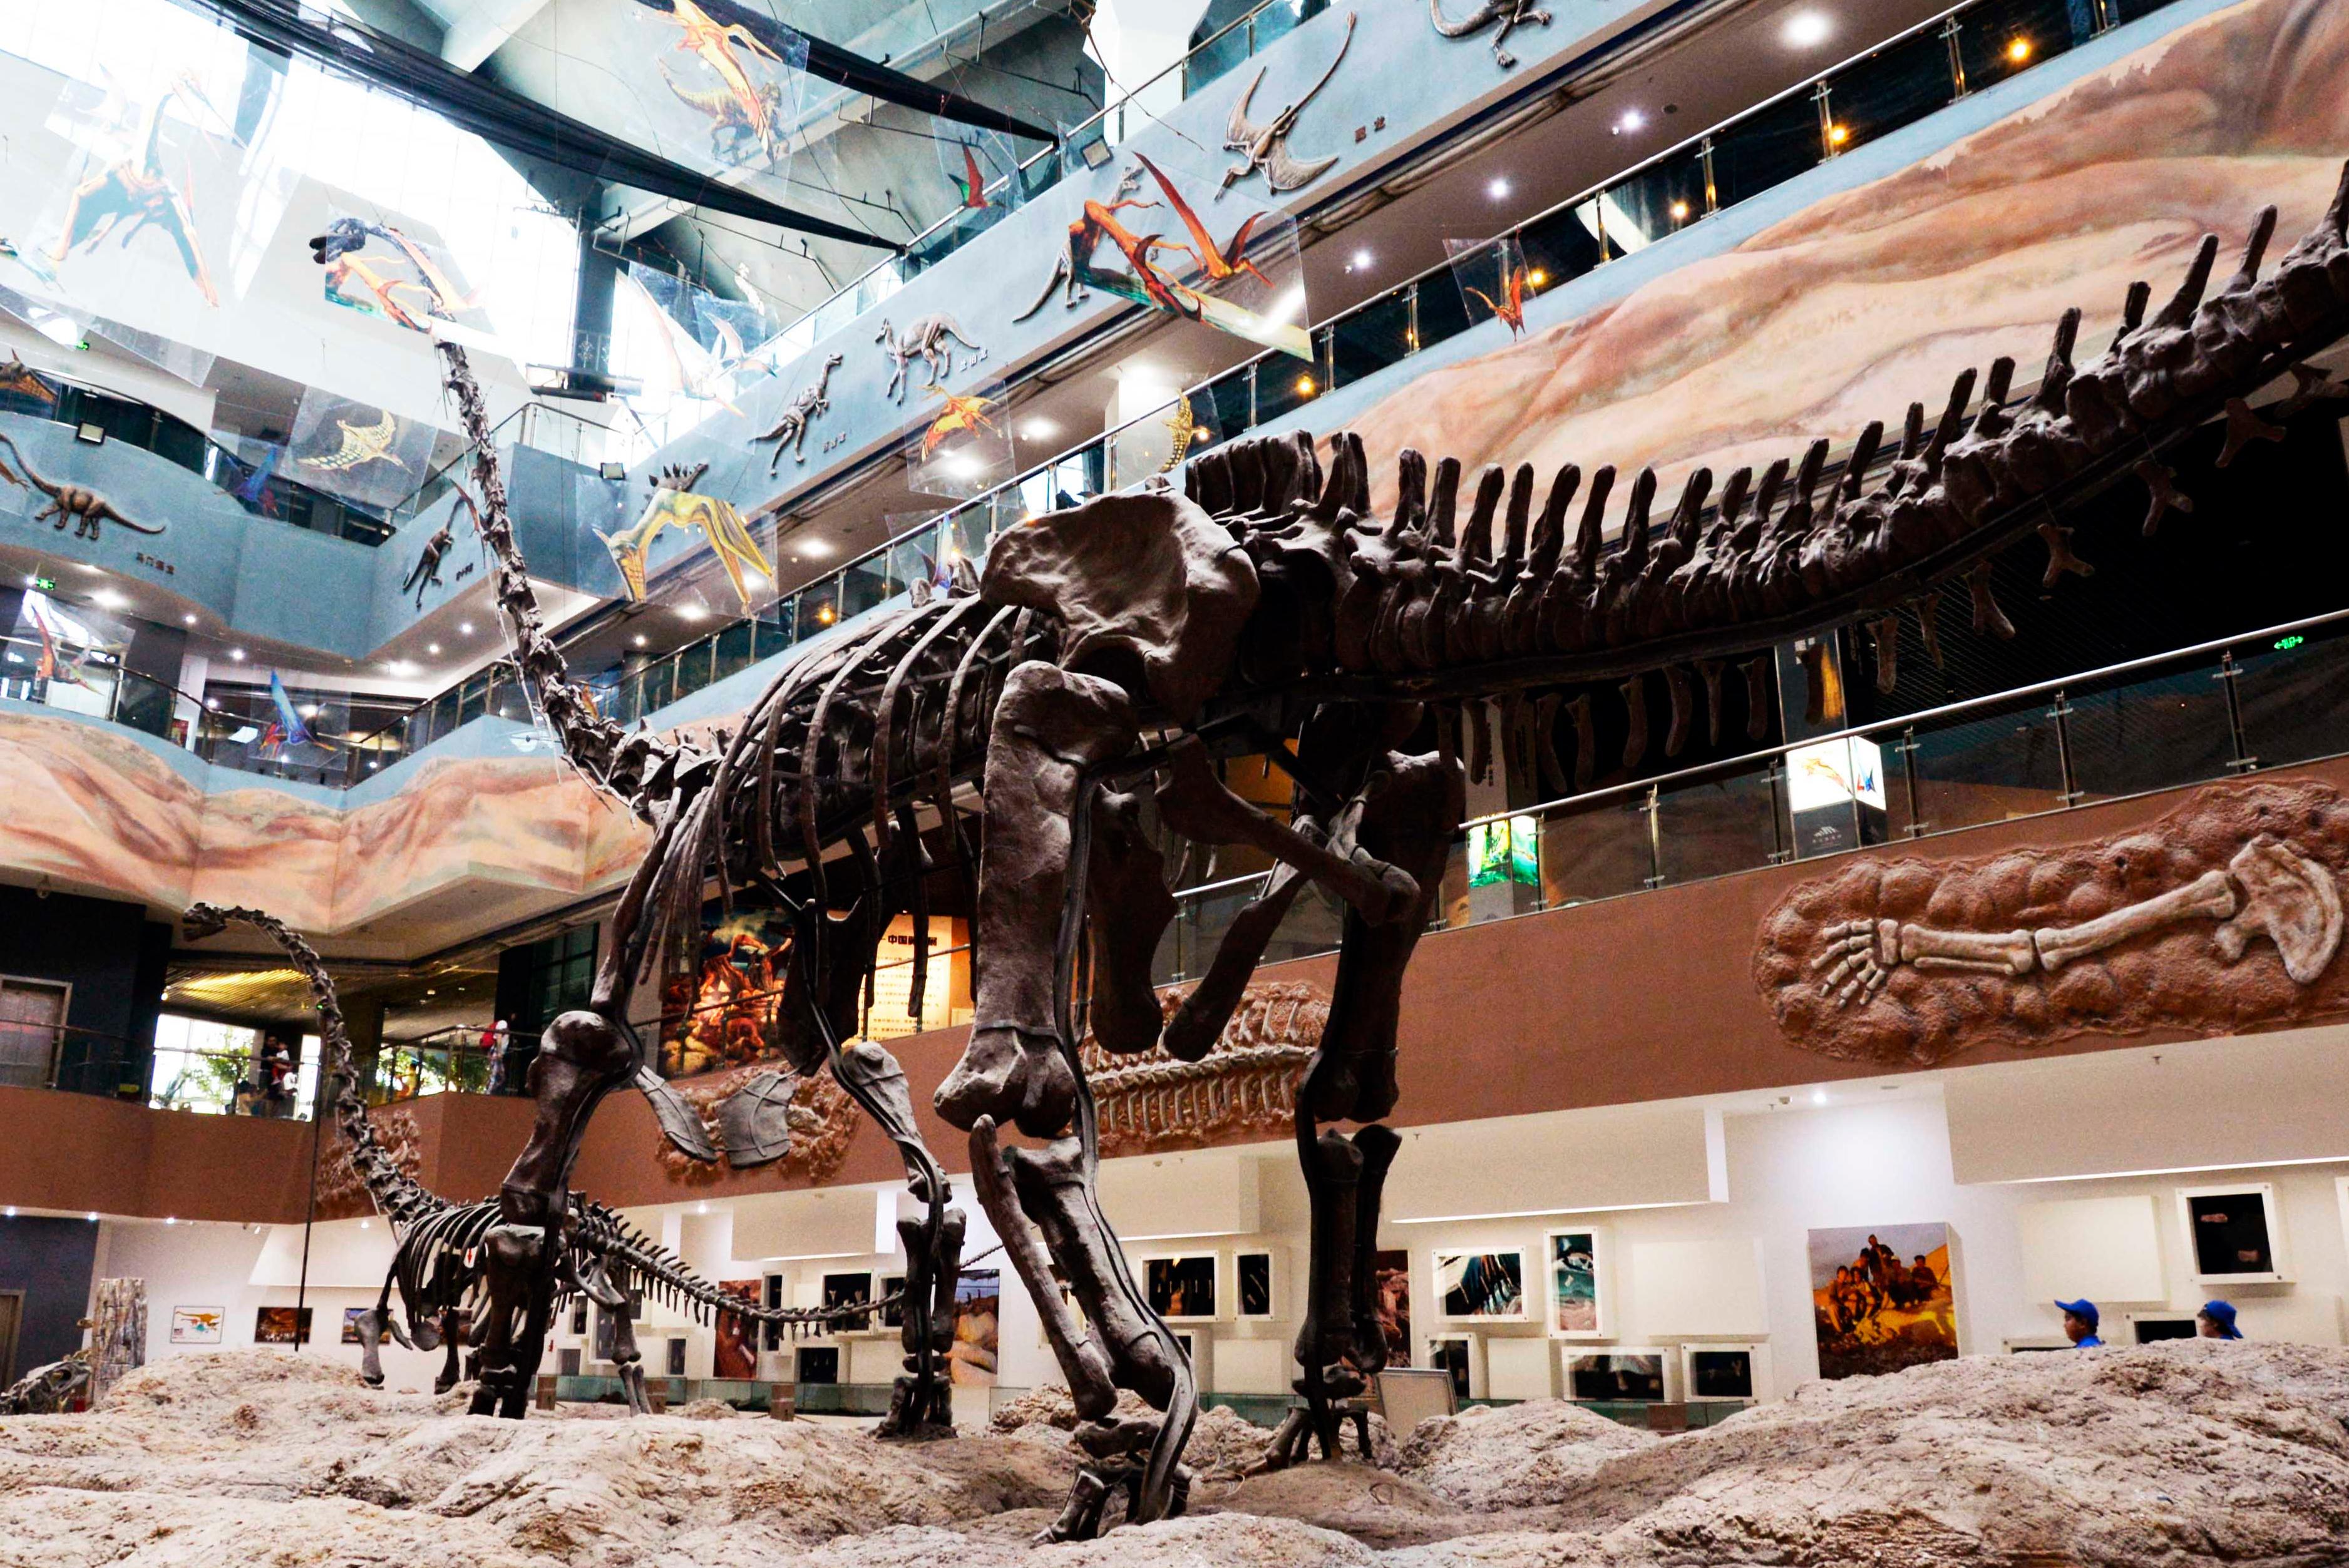 成都自然博物馆开馆 来这里看24米长的“巨无霸”恐龙化石 藏地阳光新闻网